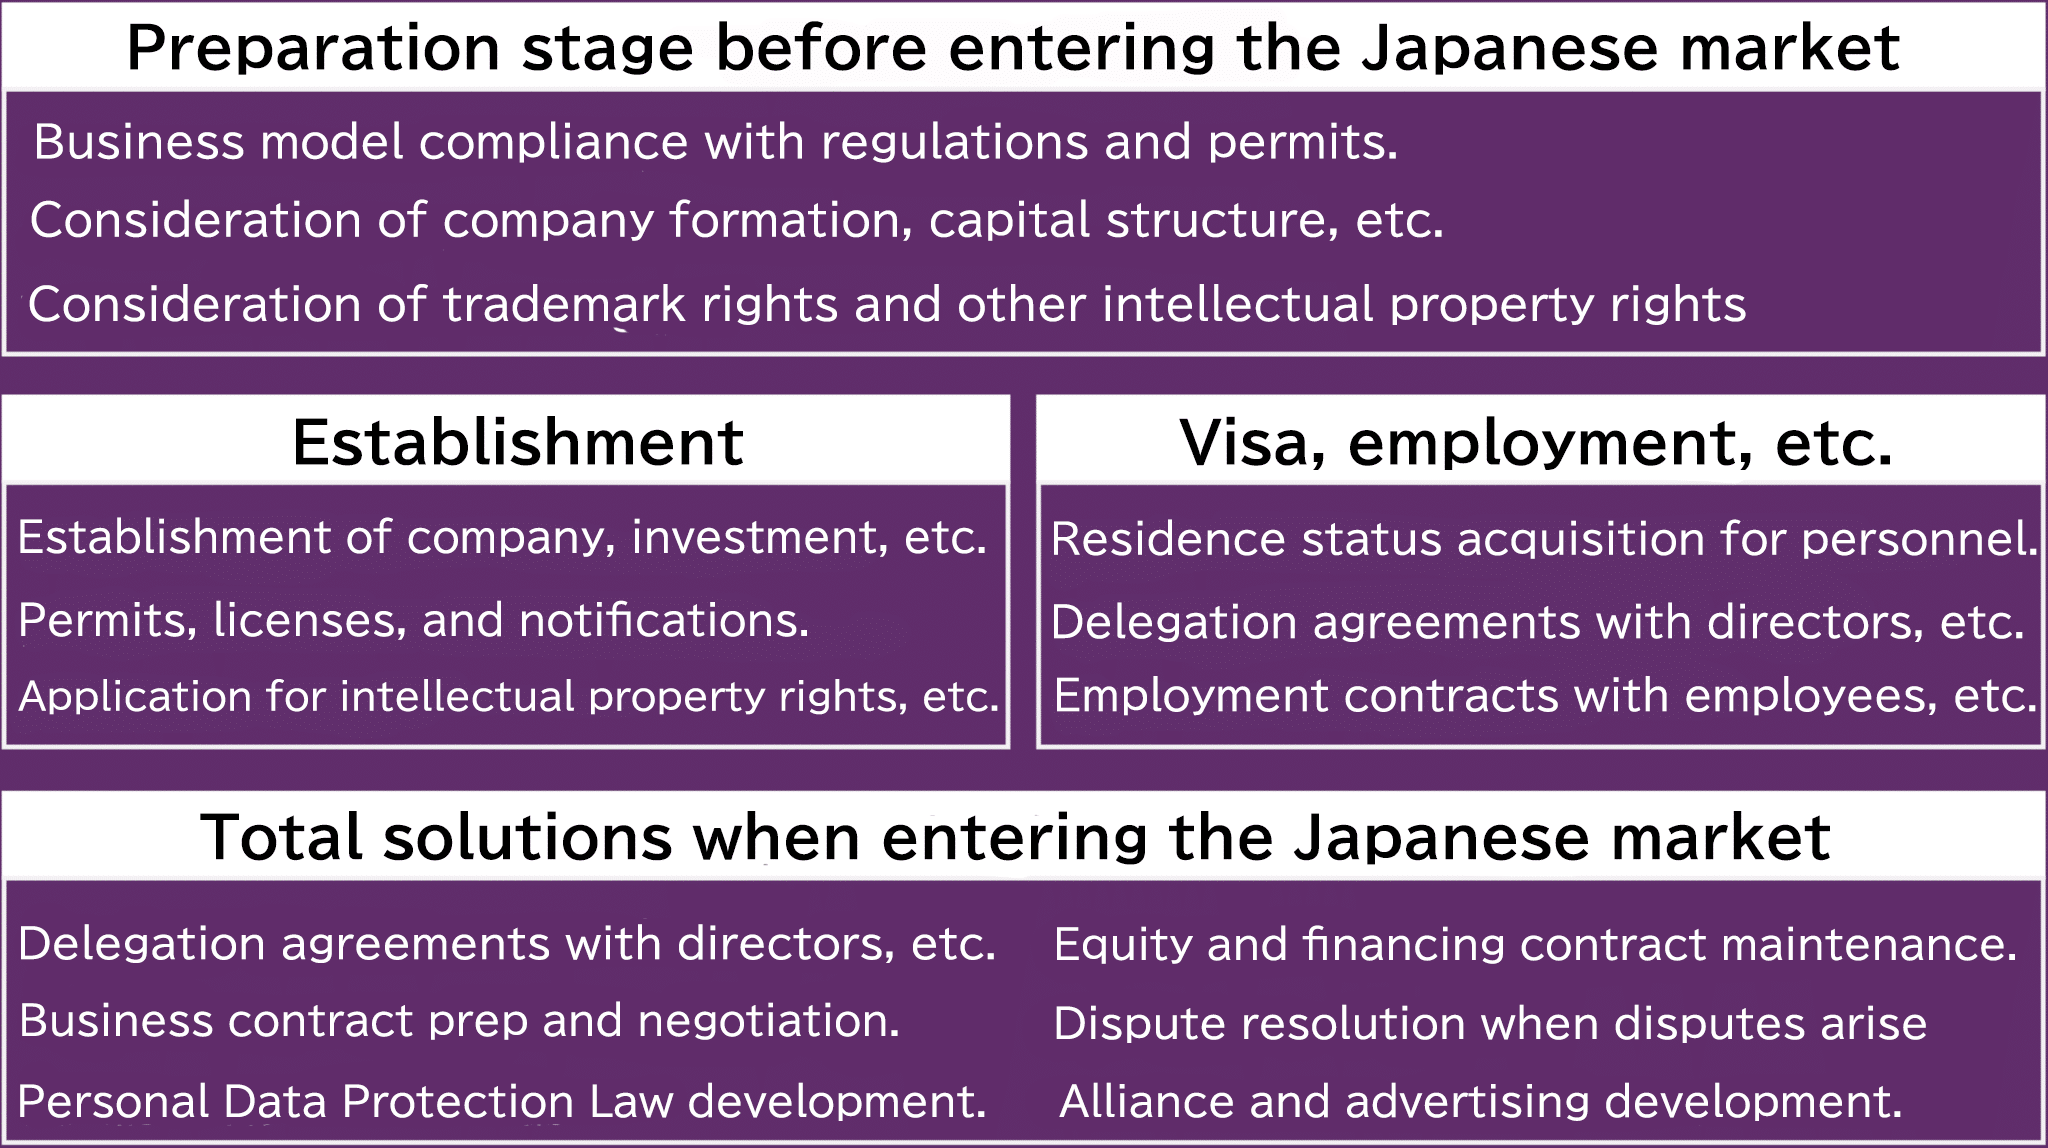 जापानी बाजार में प्रवेश के लिए संपूर्ण सहायता